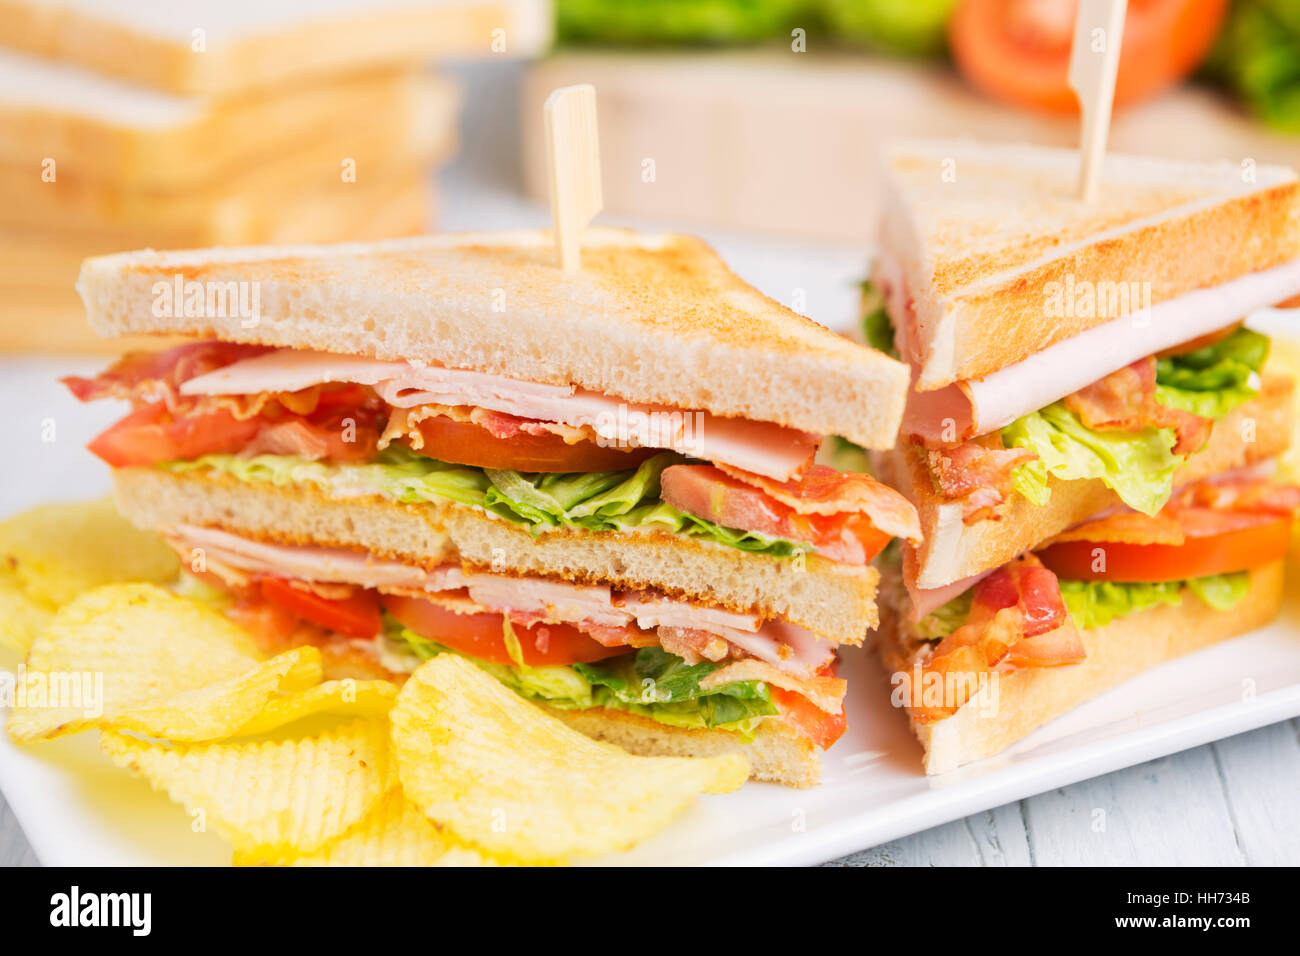 Un club sandwich su un tavolo rustico in condizioni di luce intensa. Foto Stock